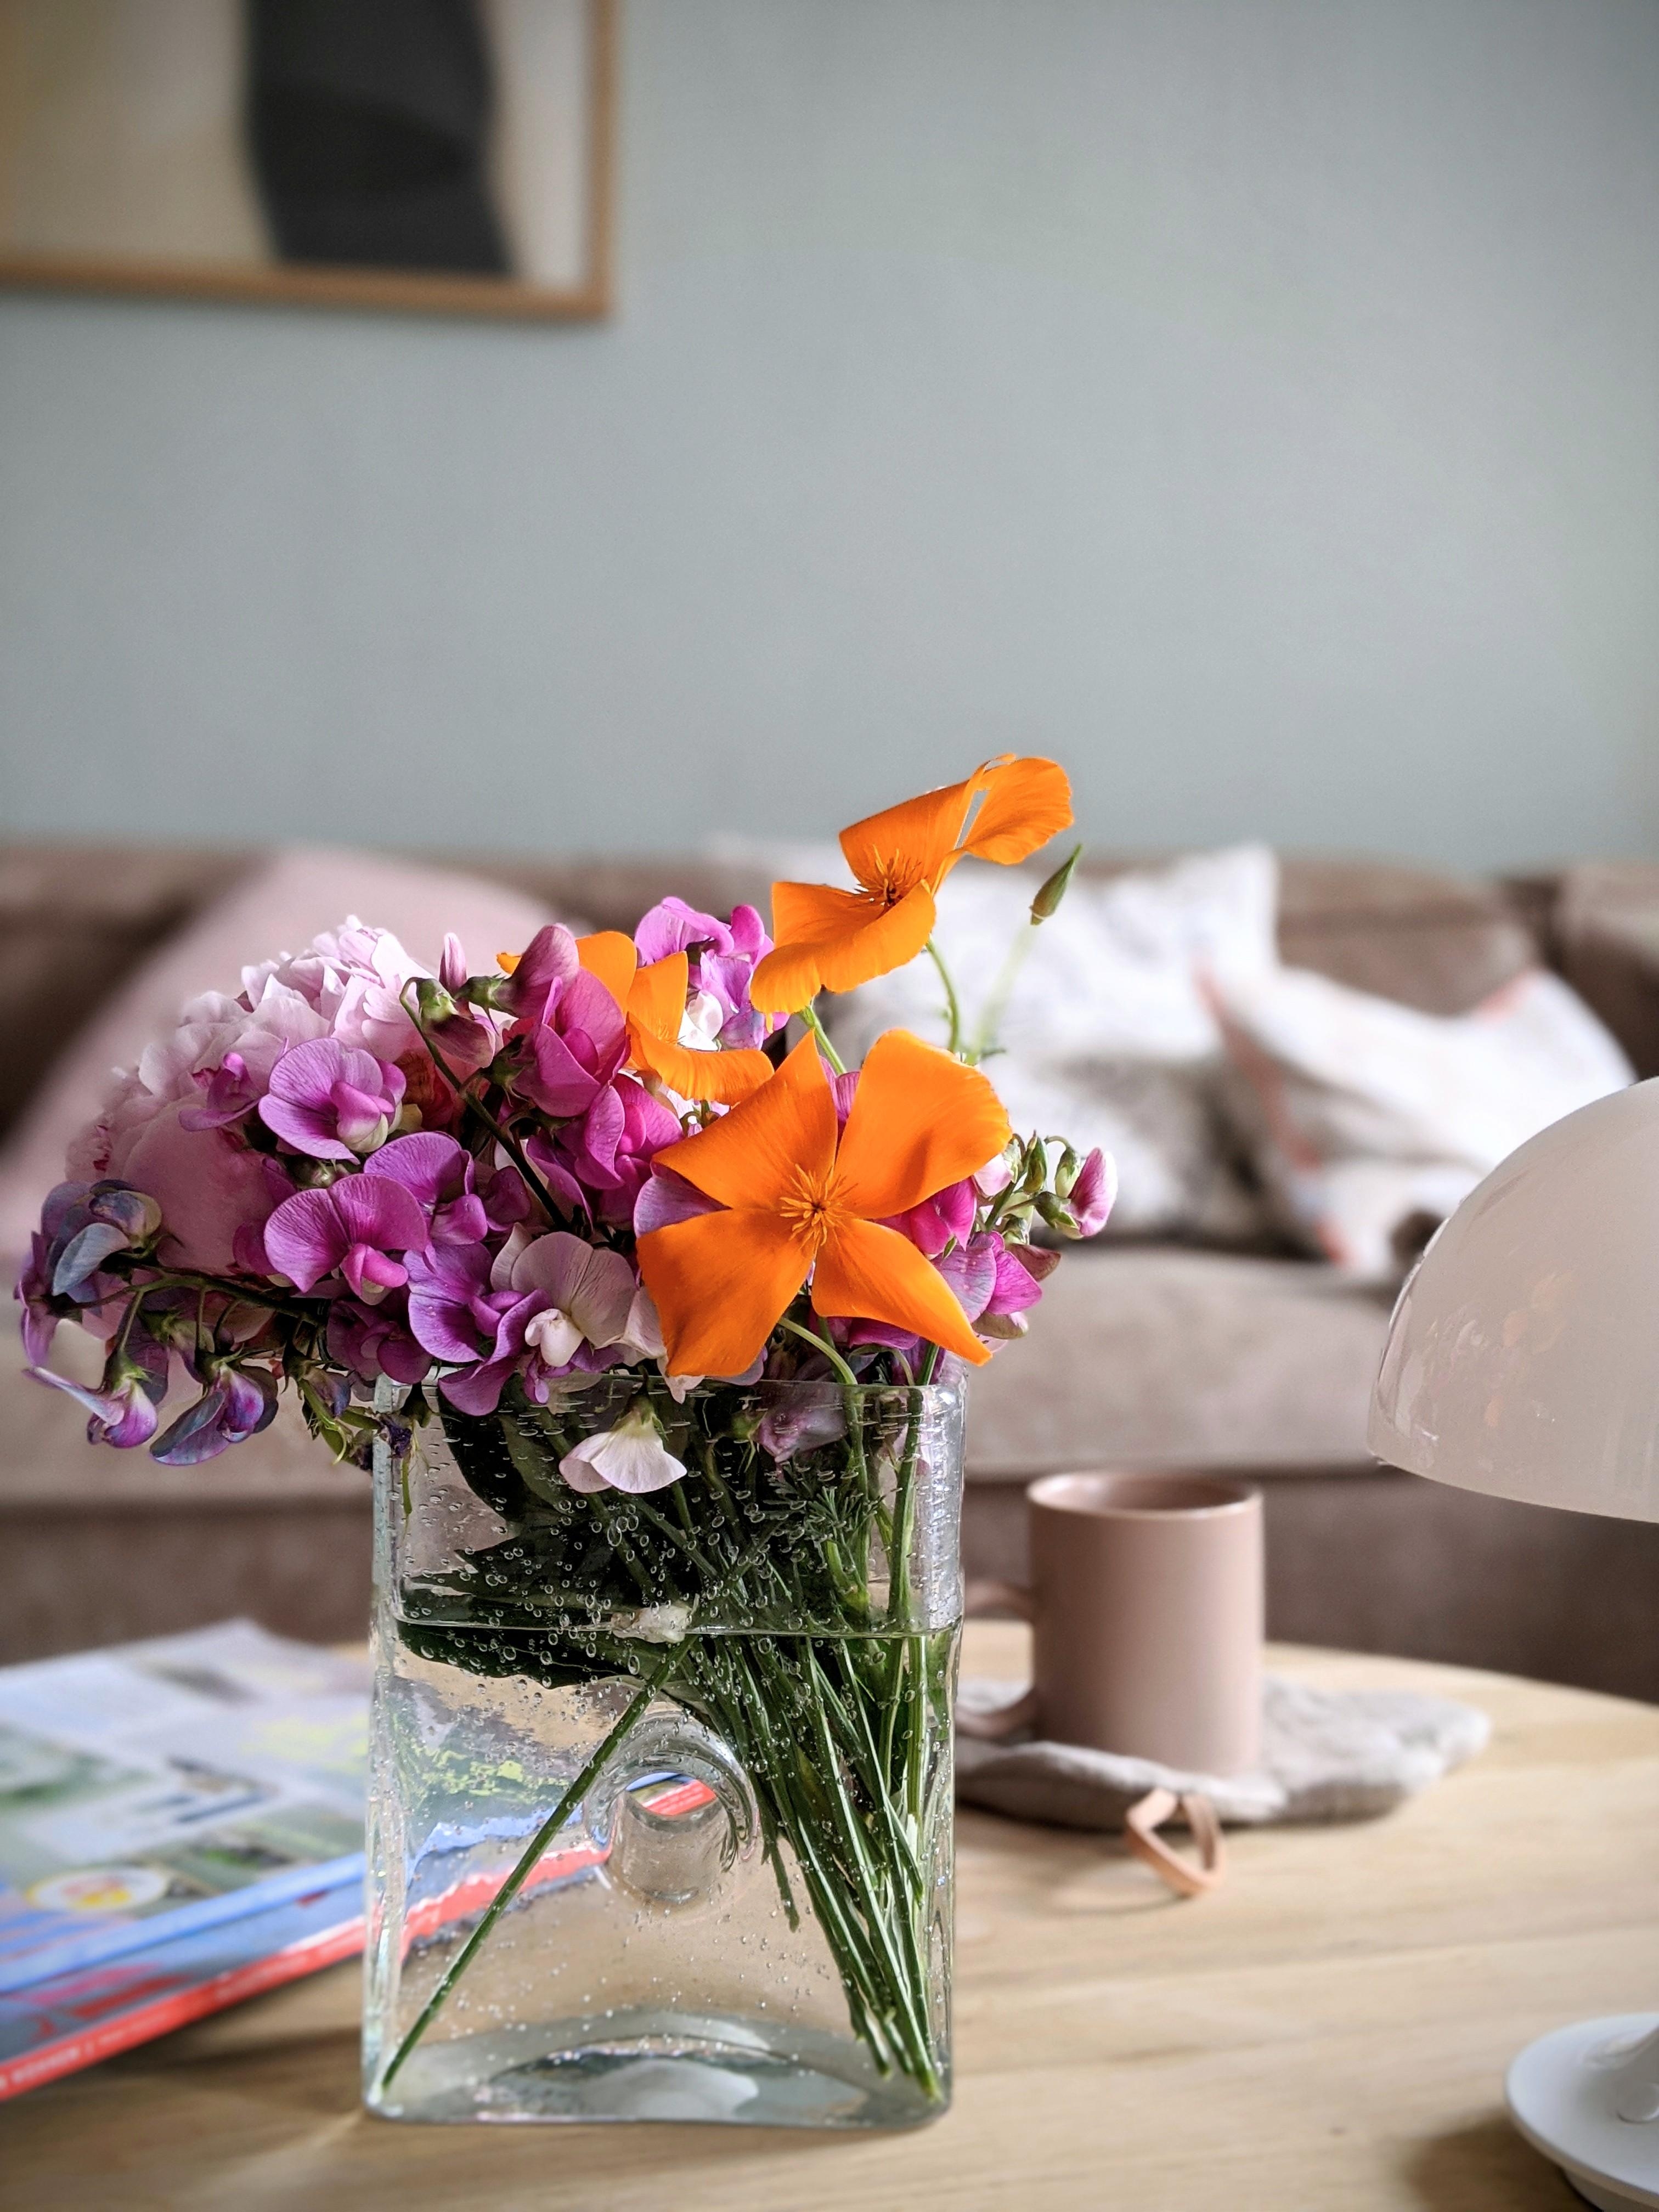 Ab ins Wochenende #Blumenliebe #vasen #vasenliebe #scandinavisch #flowers #color #sommer #wohnzimmer #interior 